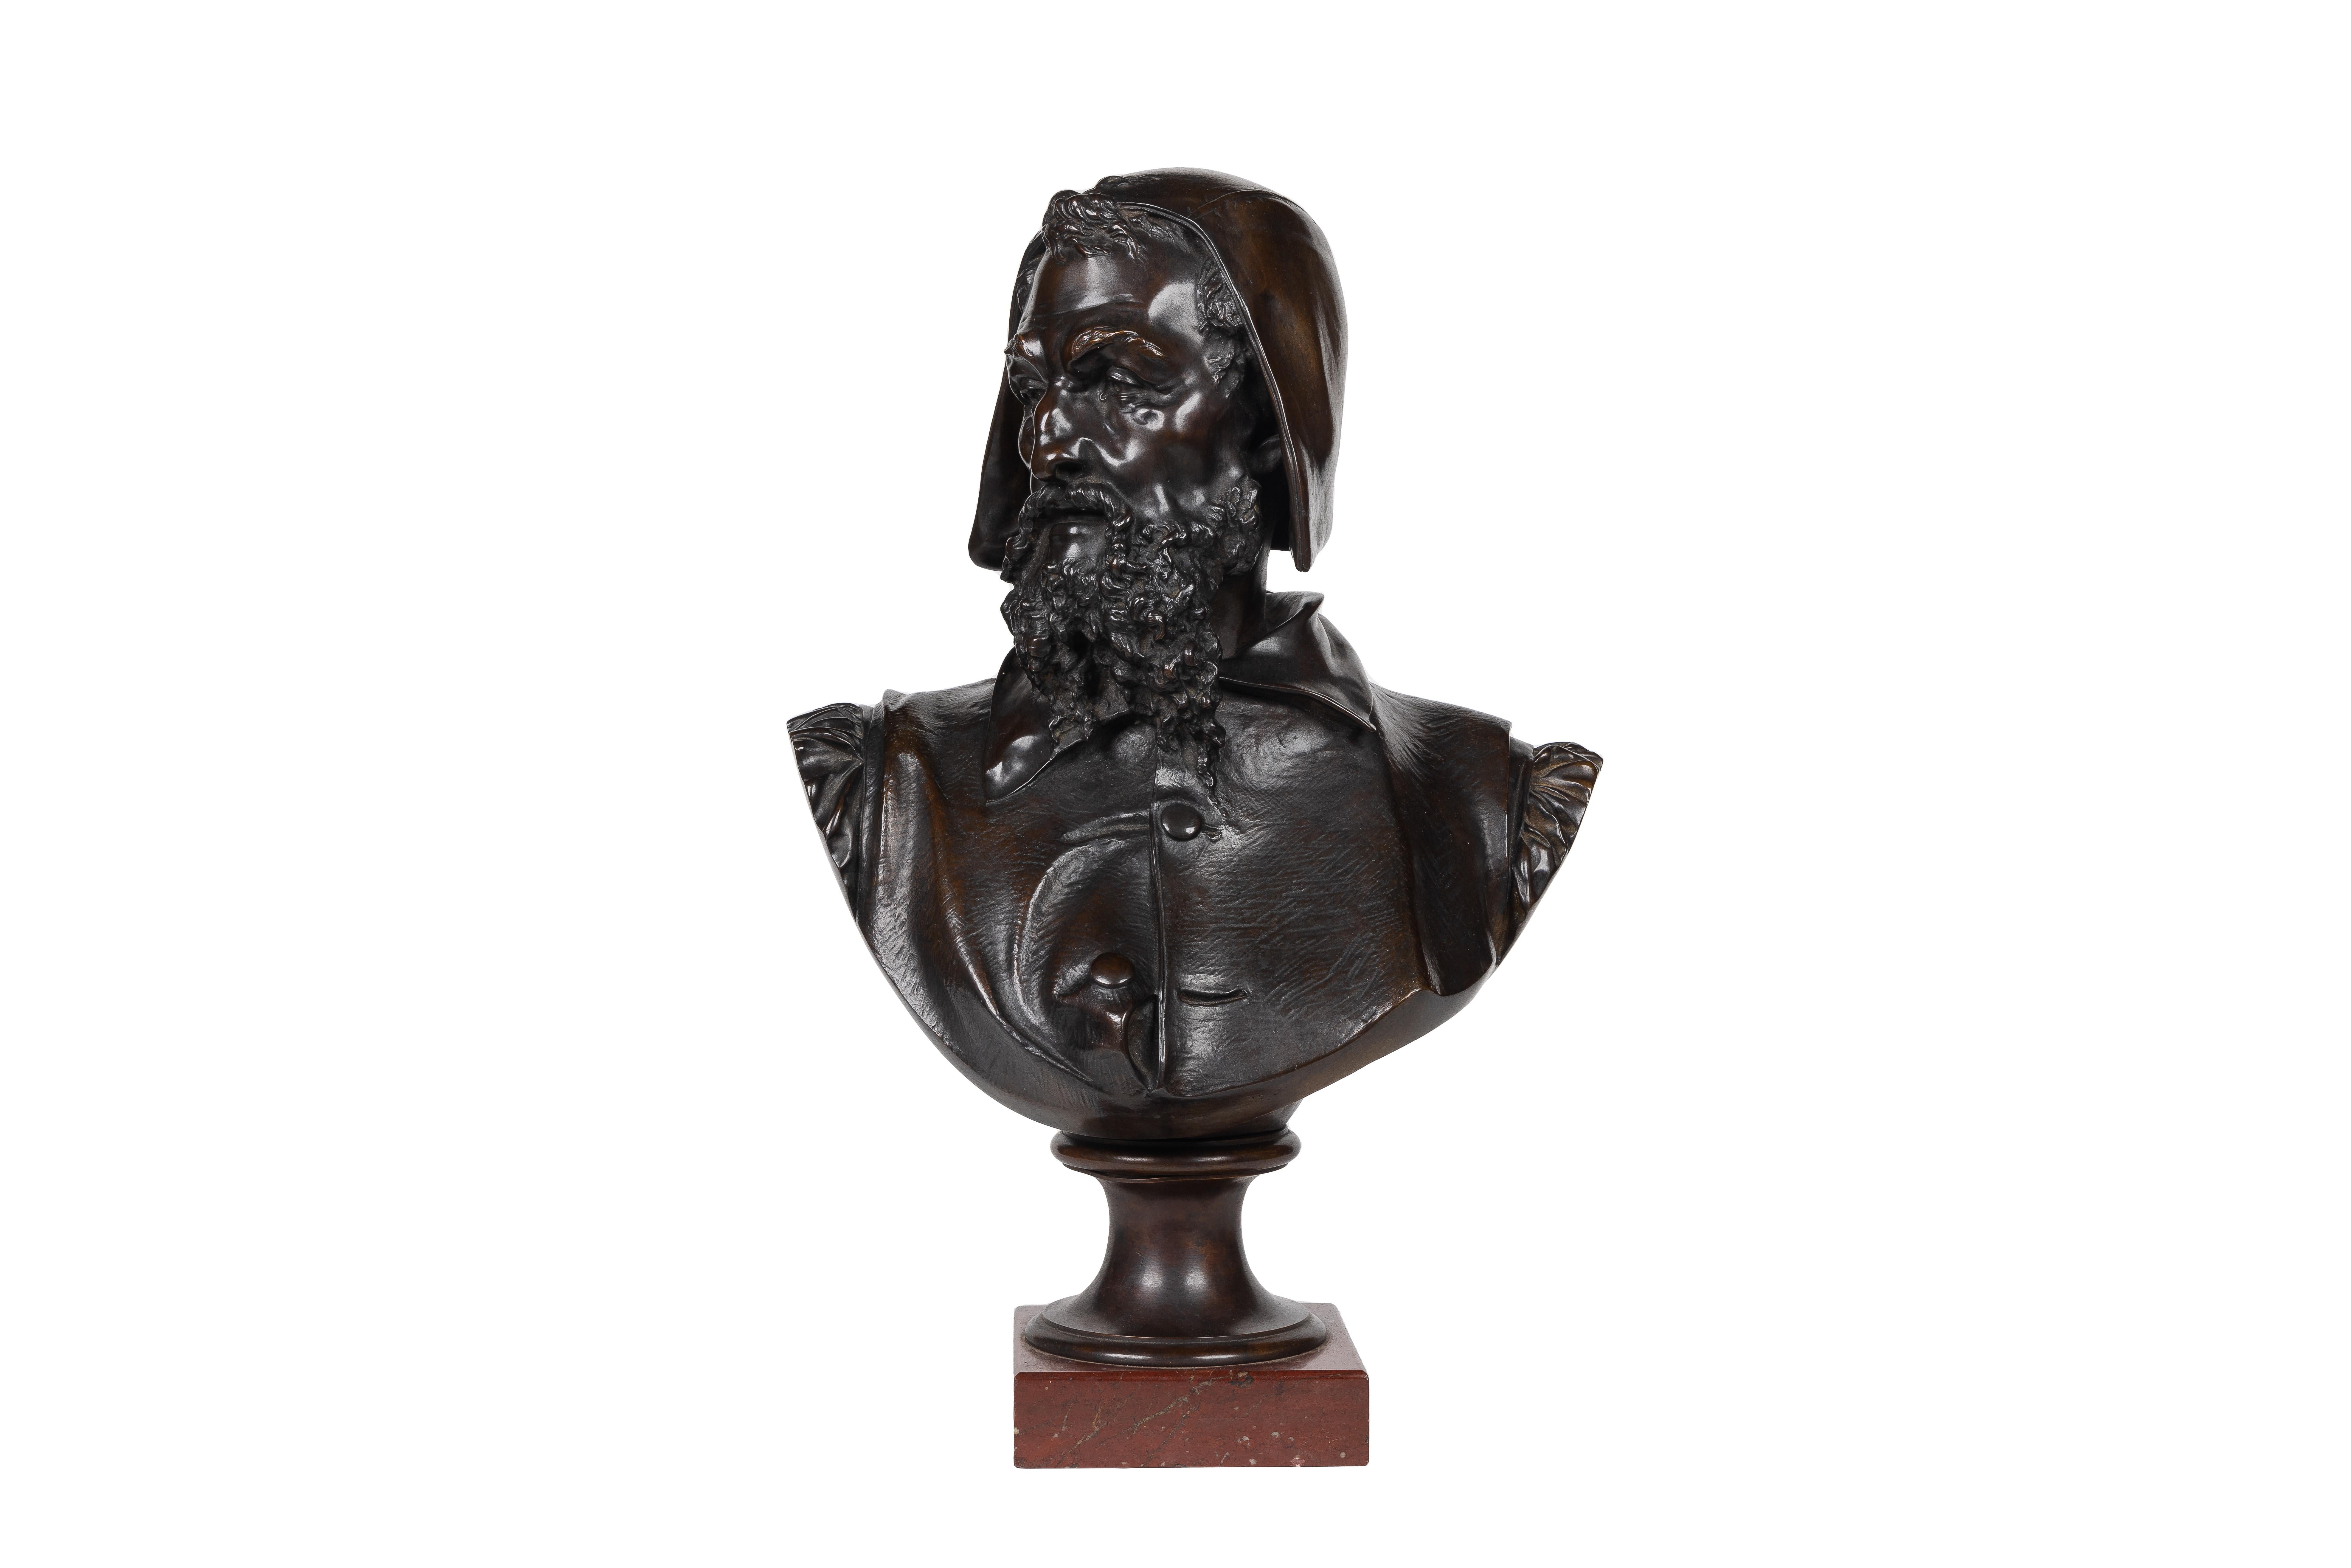 Figurative Sculpture Albert-Ernest Carrier-Belleuse - Un rare et important buste de Michel-Ange en bronze